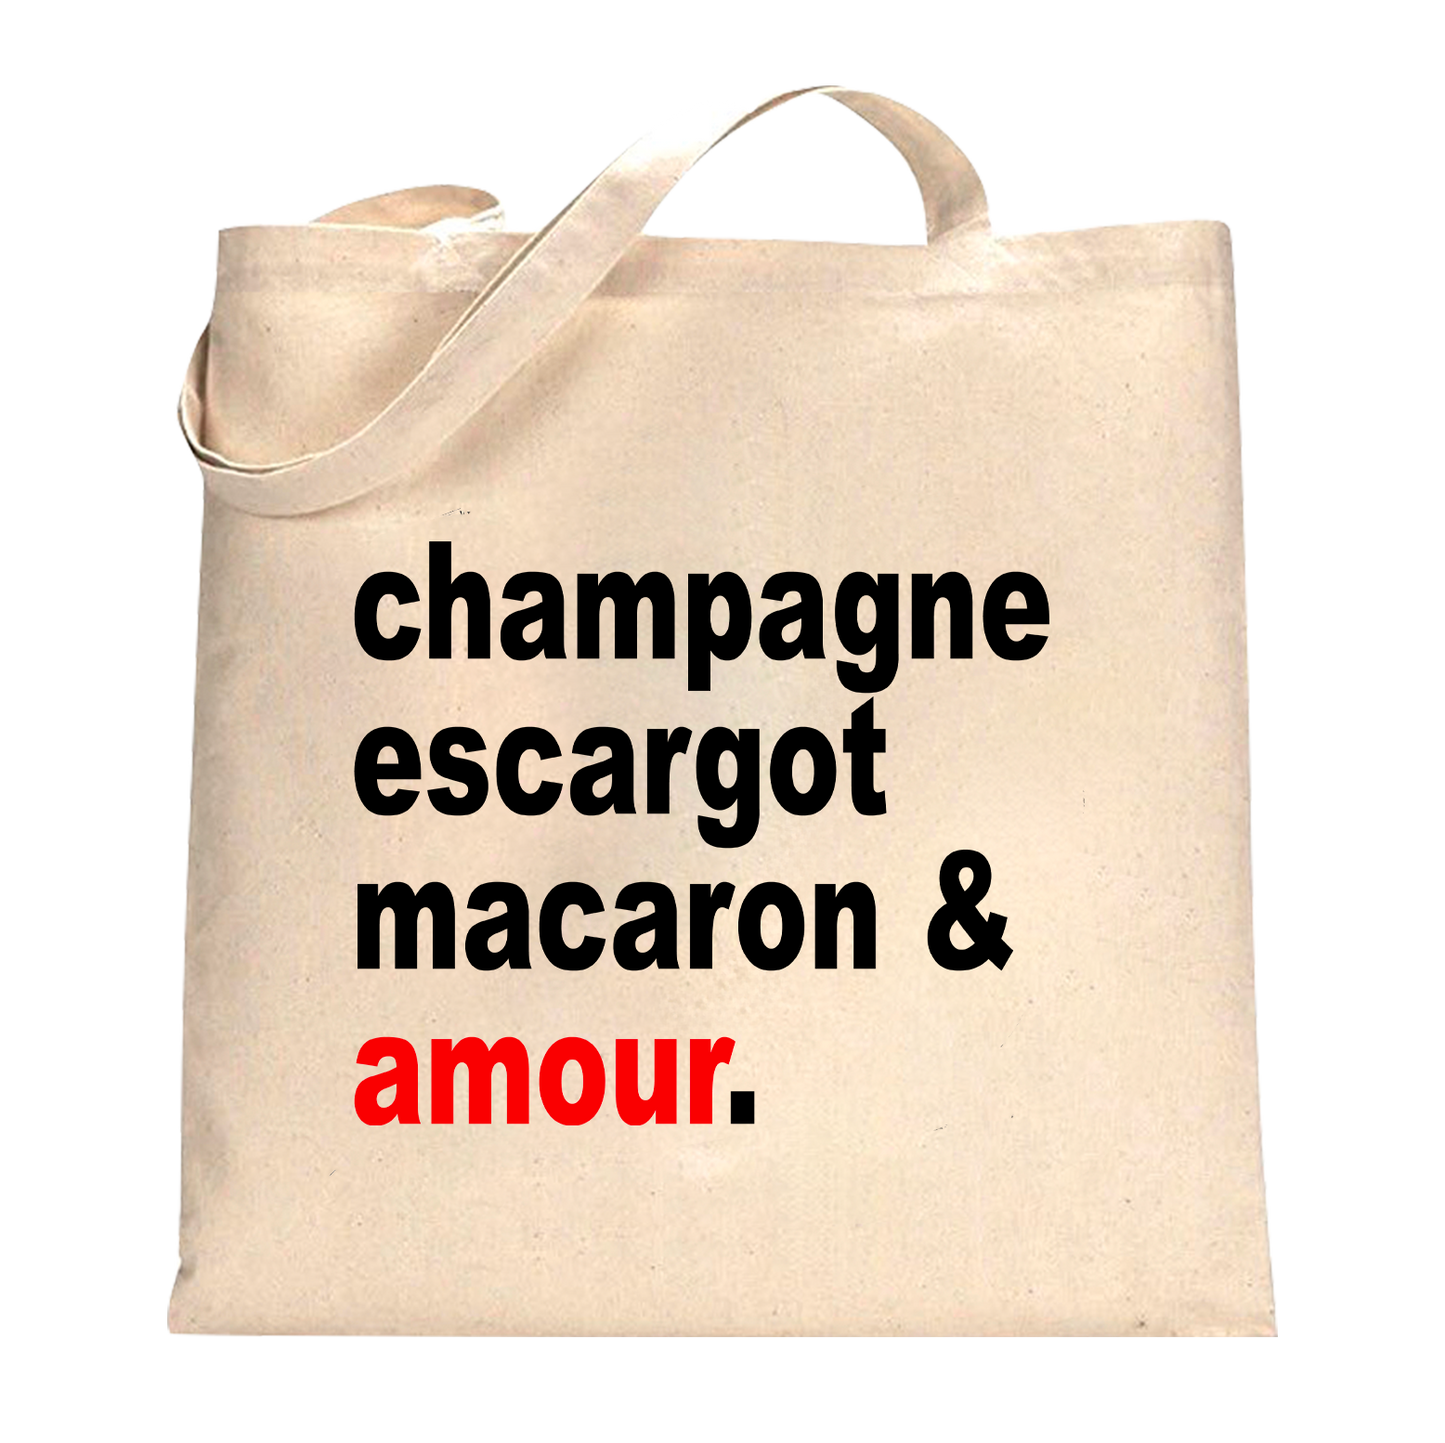 Borsa Champagne Escargot Macaron & Amour.